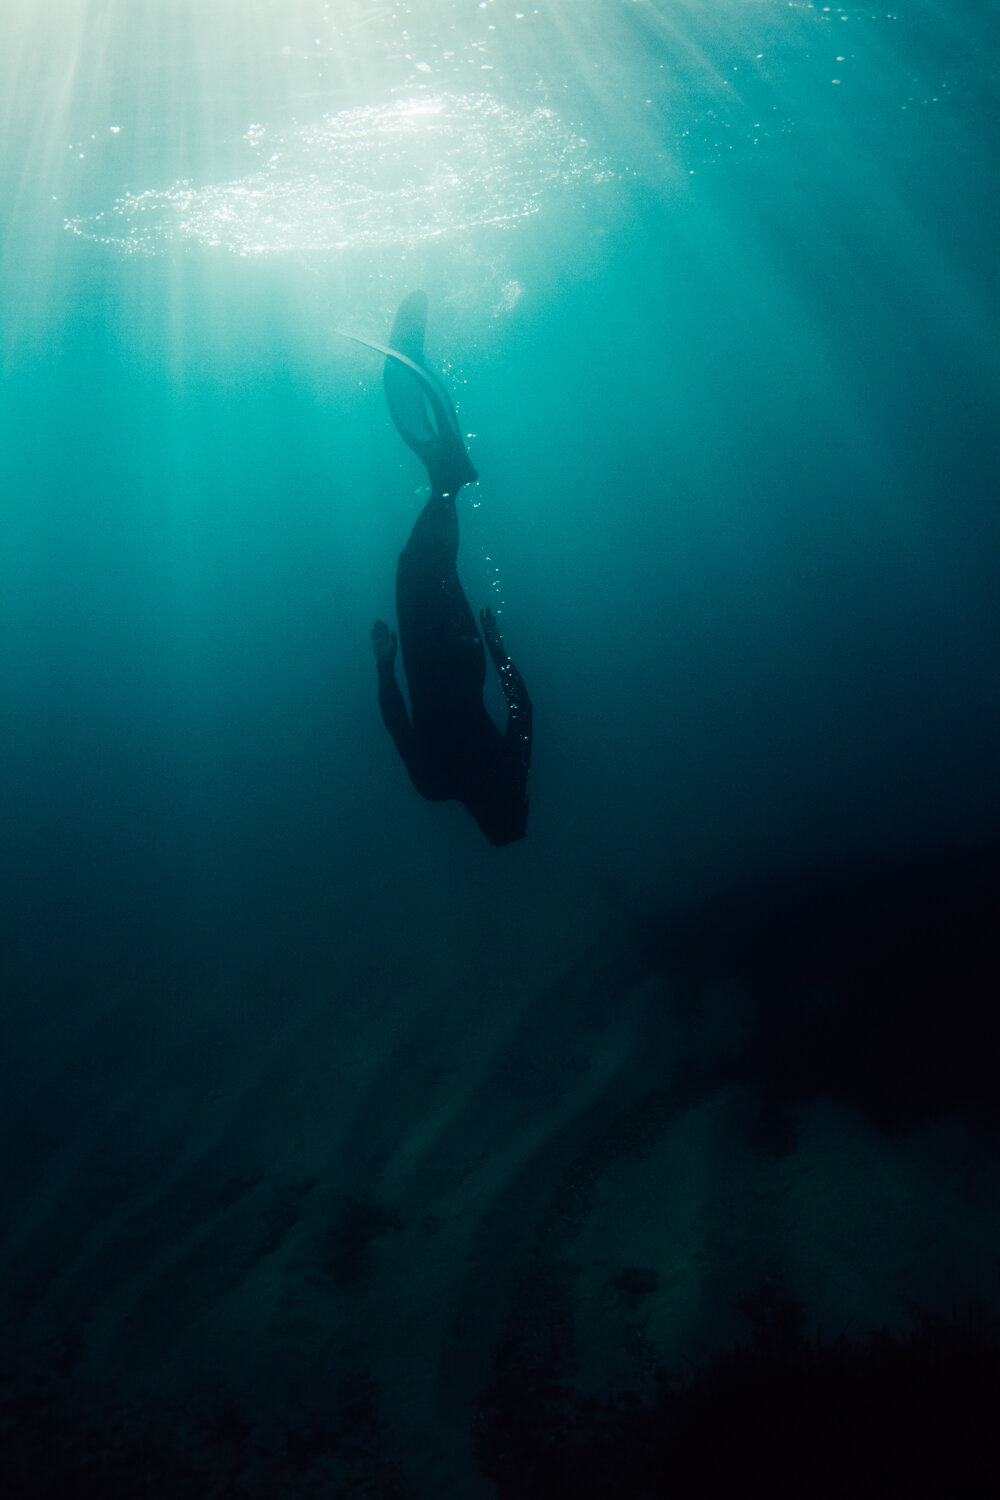 Krista Espino corse corsica photograph photographe photographer europe underwater freedive dive diving explore adventure ajaccio corse-du-sud sea mediterranean island france french_-10.jpg